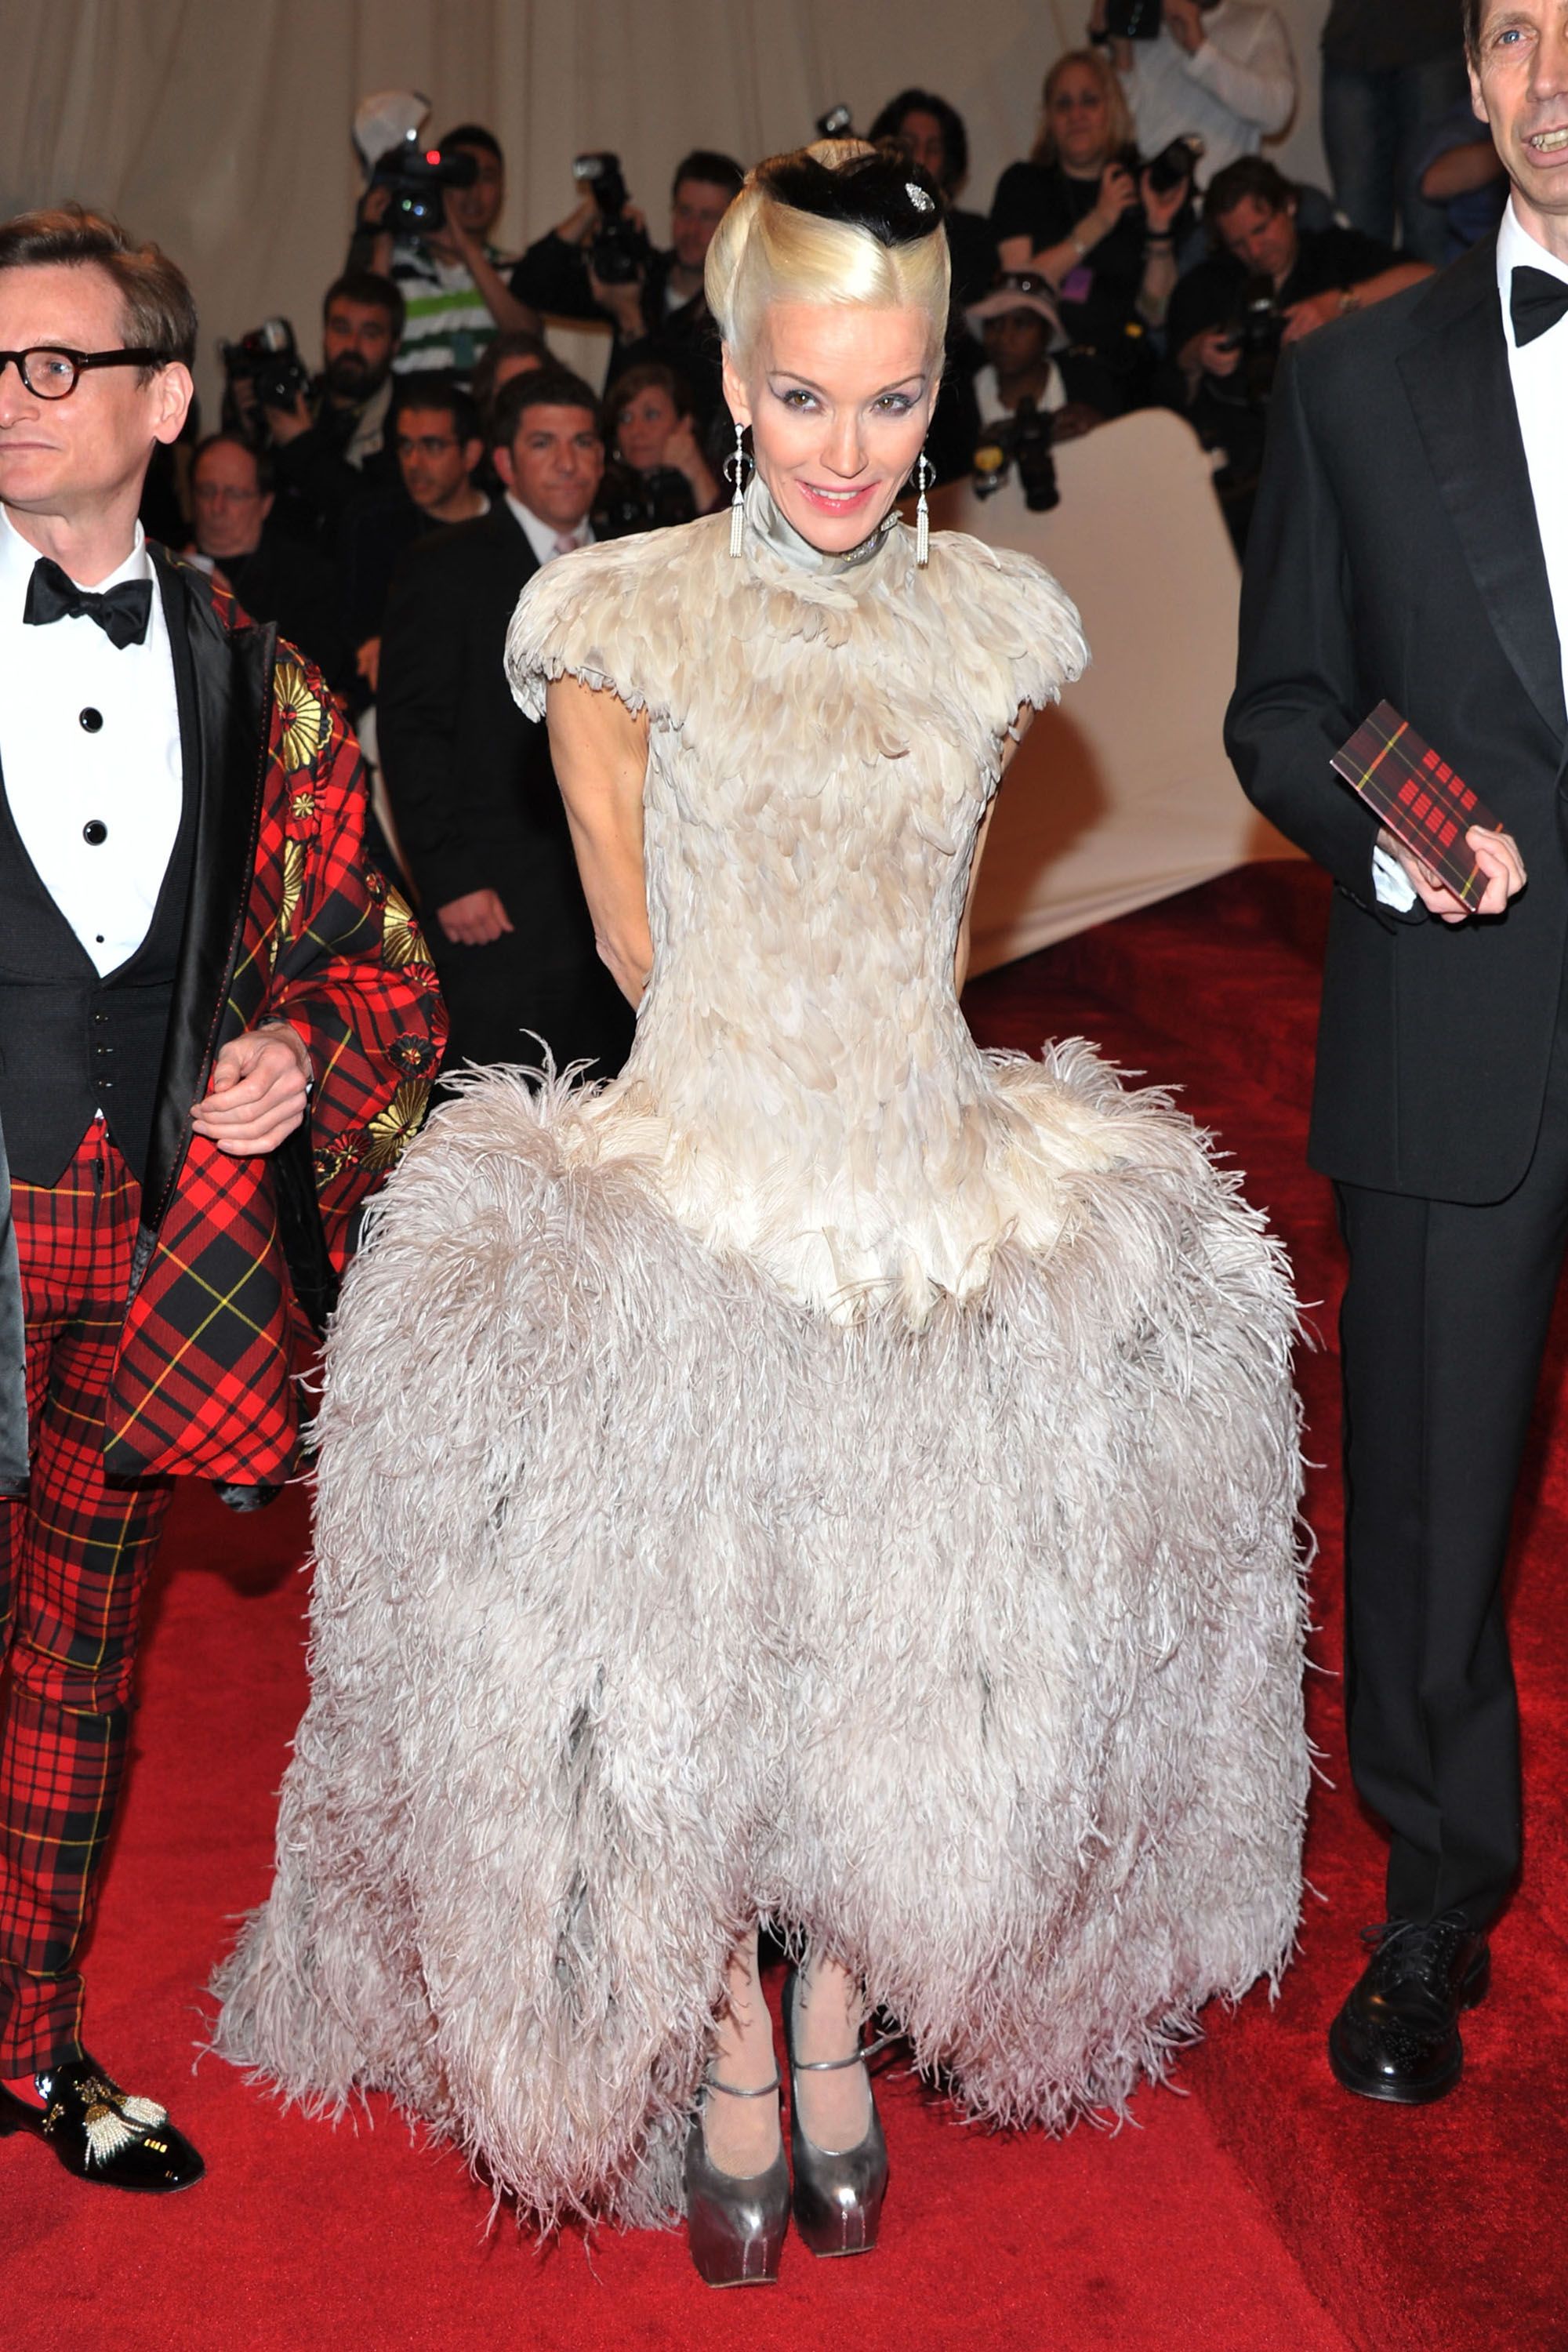 The Met Gala's wildest, craziest fashion